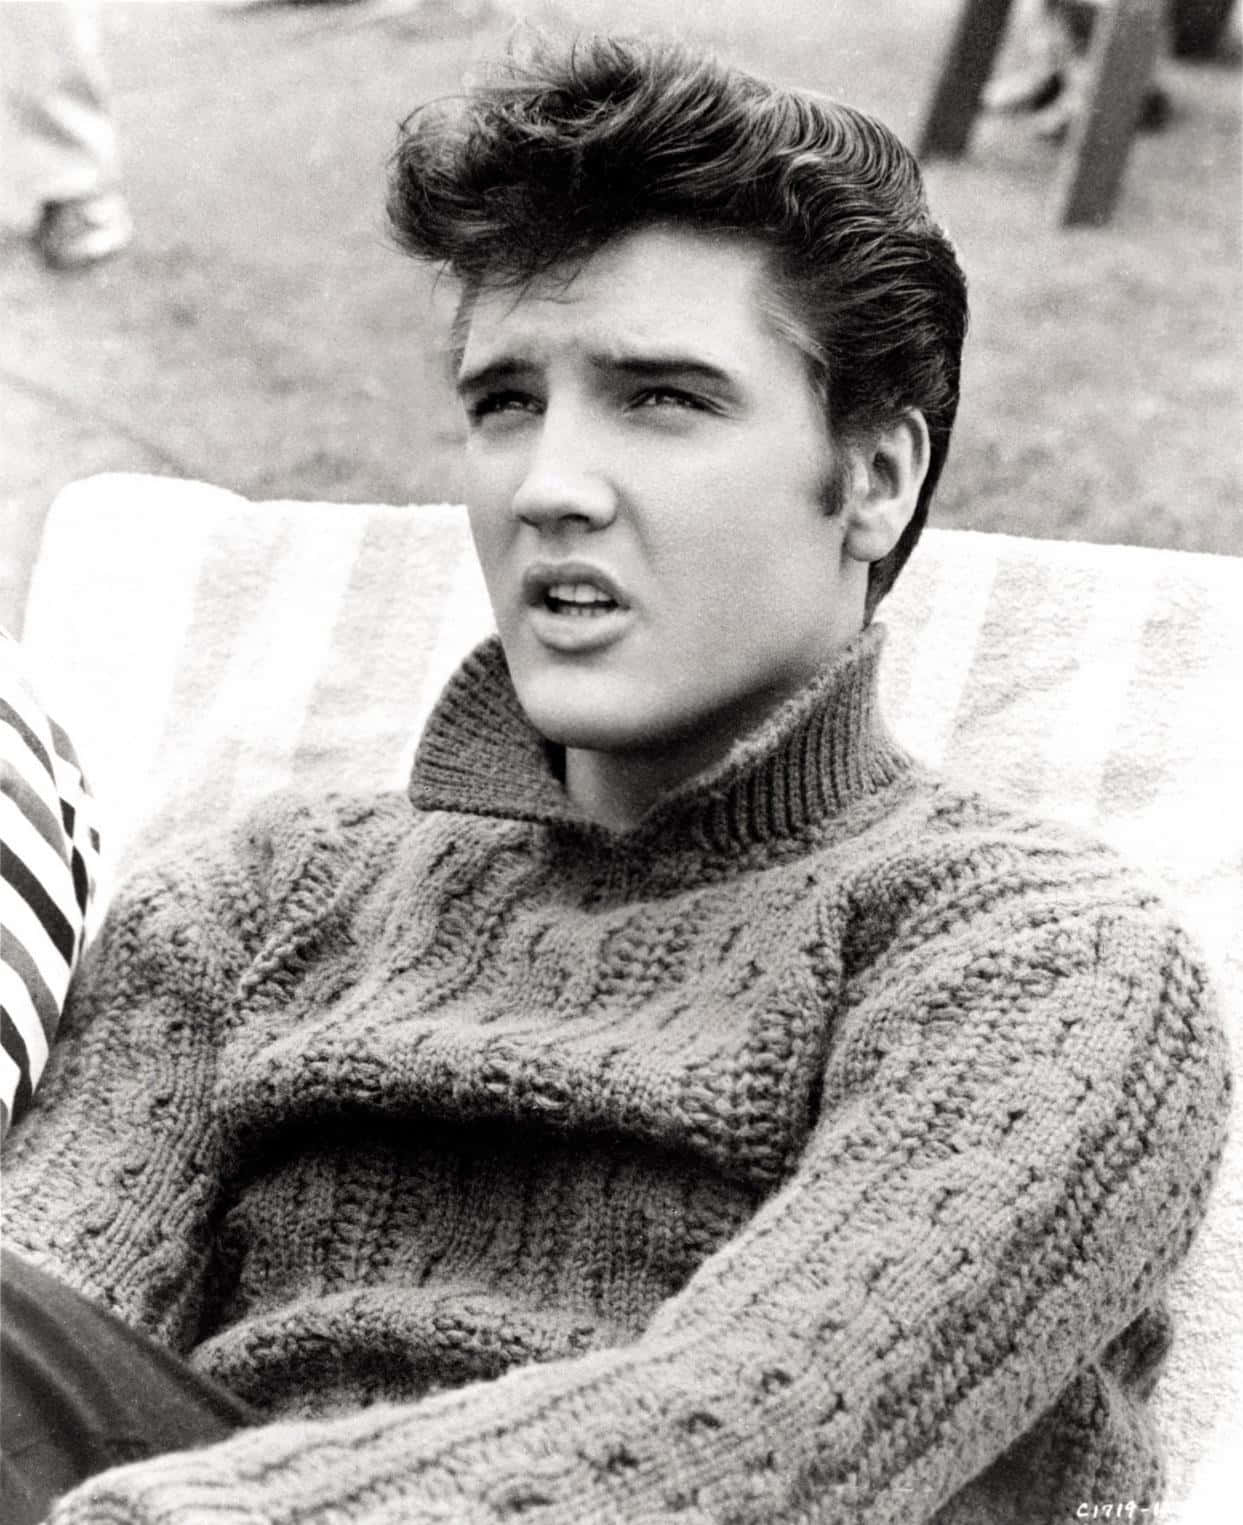 The King of Rock 'n Roll, Elvis Presley